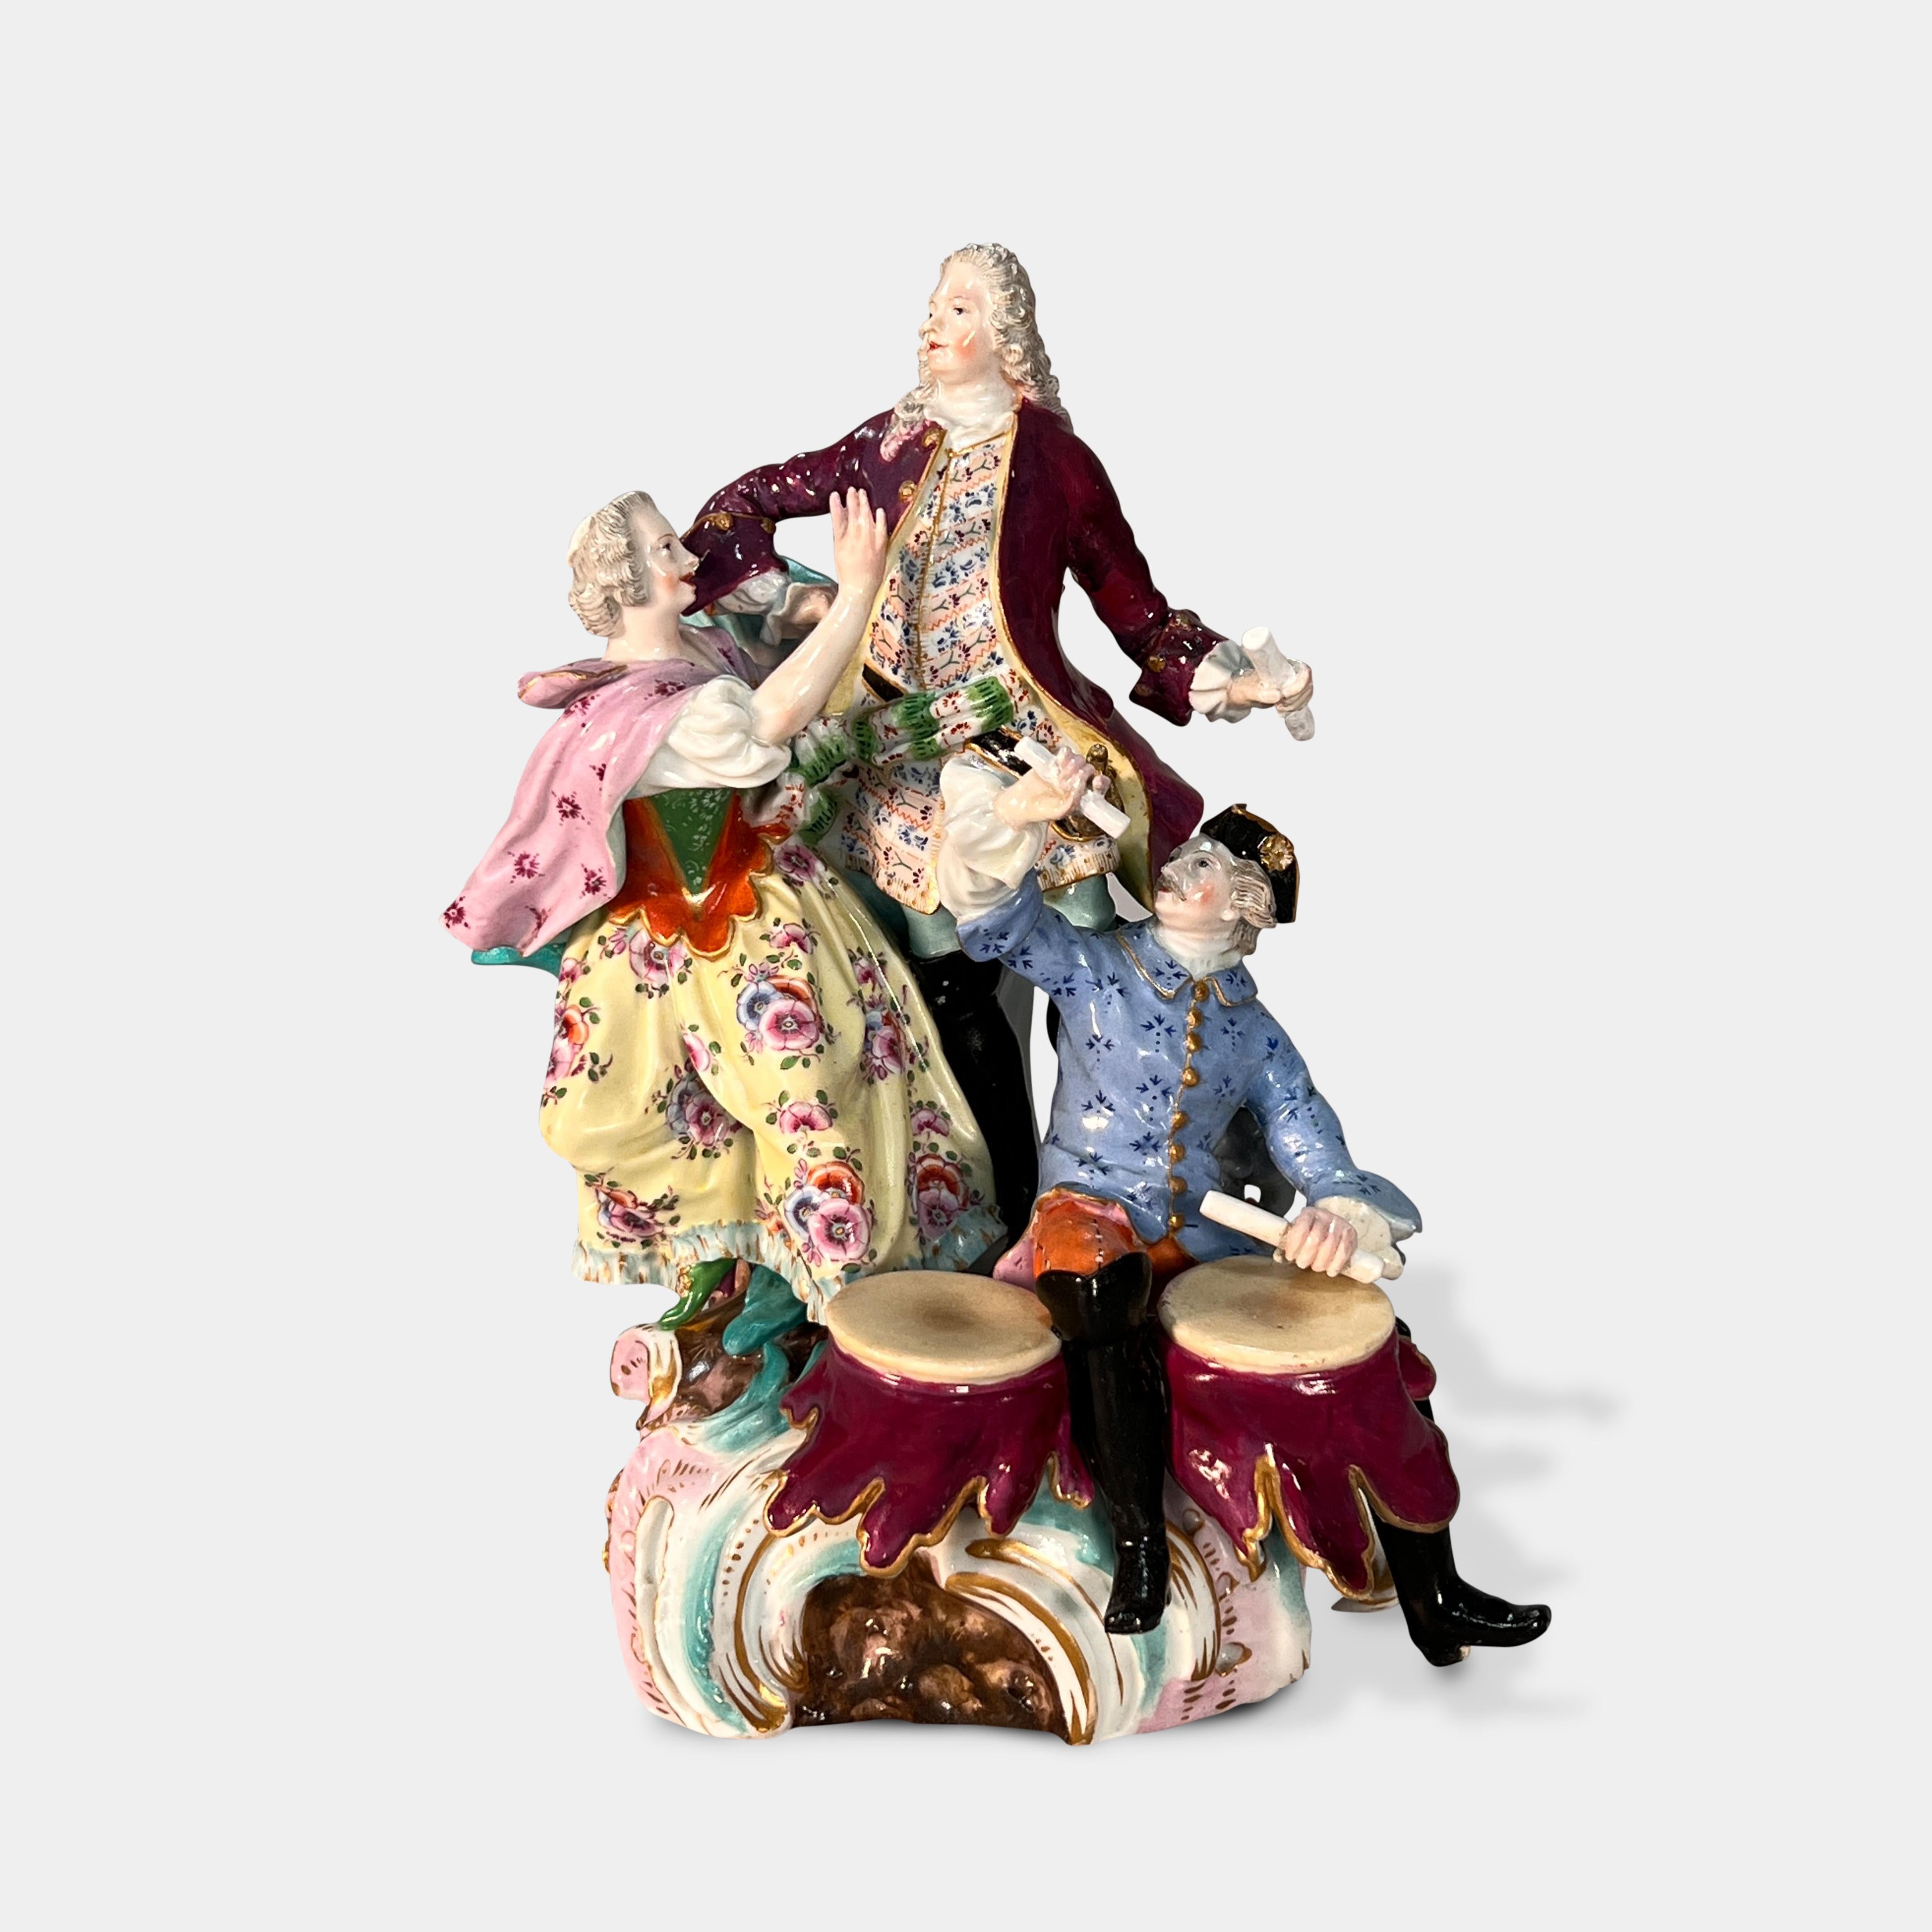 Joli groupe figuratif en porcelaine allemande de Meissen du 19e siècle représentant une dame debout faisant appel à un gentleman debout et un musicien assis à leurs pieds jouant du tambour.

Fin du 19e siècle.

Marque de l'épée croisée de